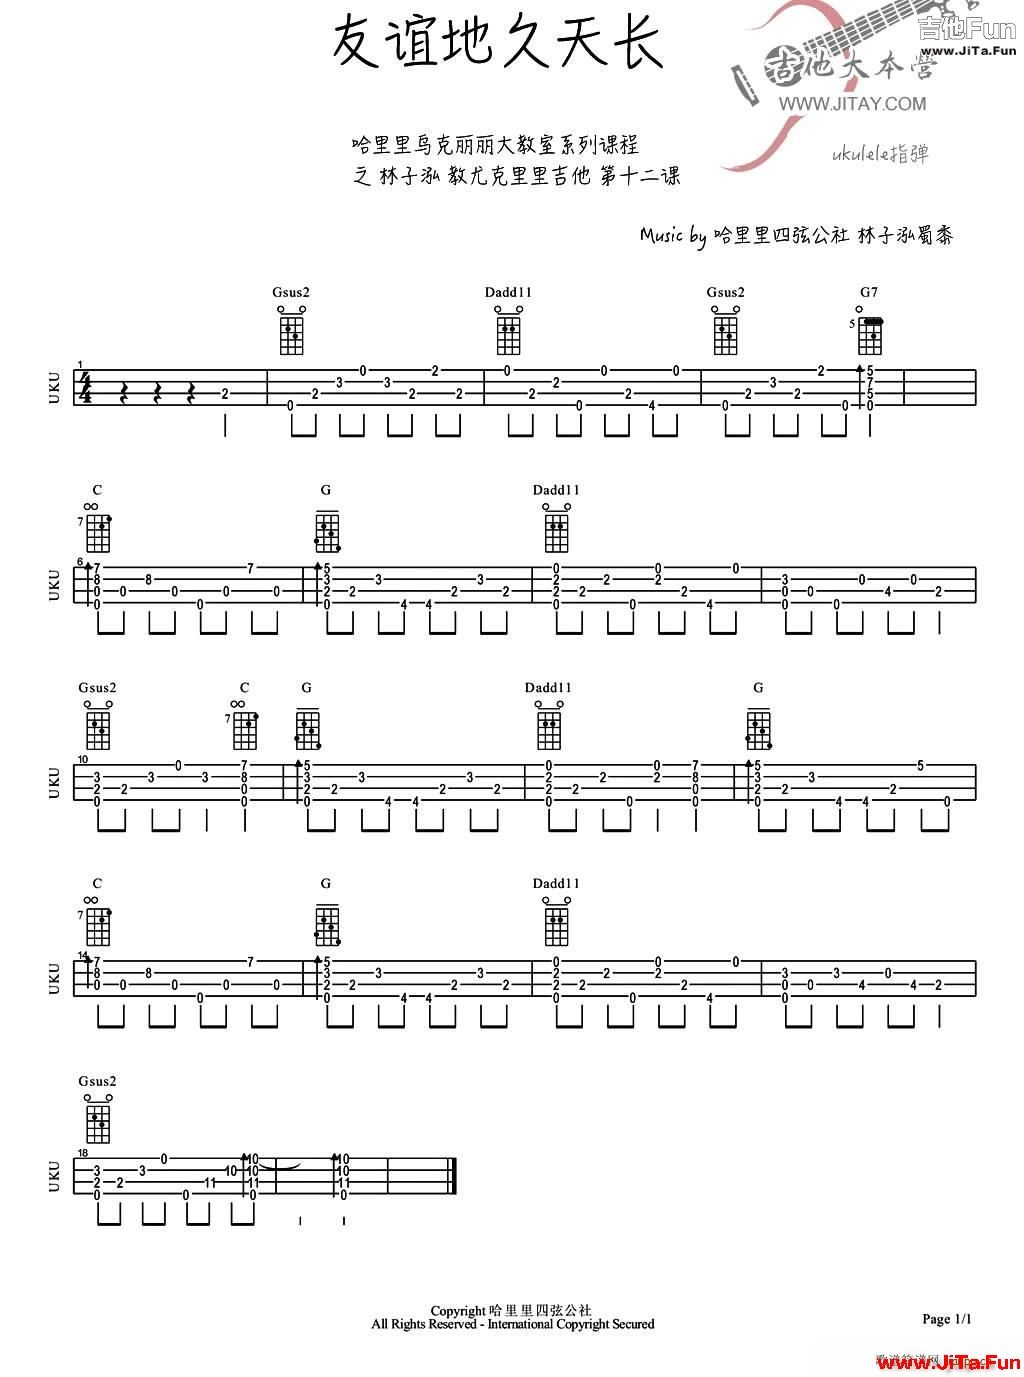 友誼地久天長 ukulele譜(吉他譜)1